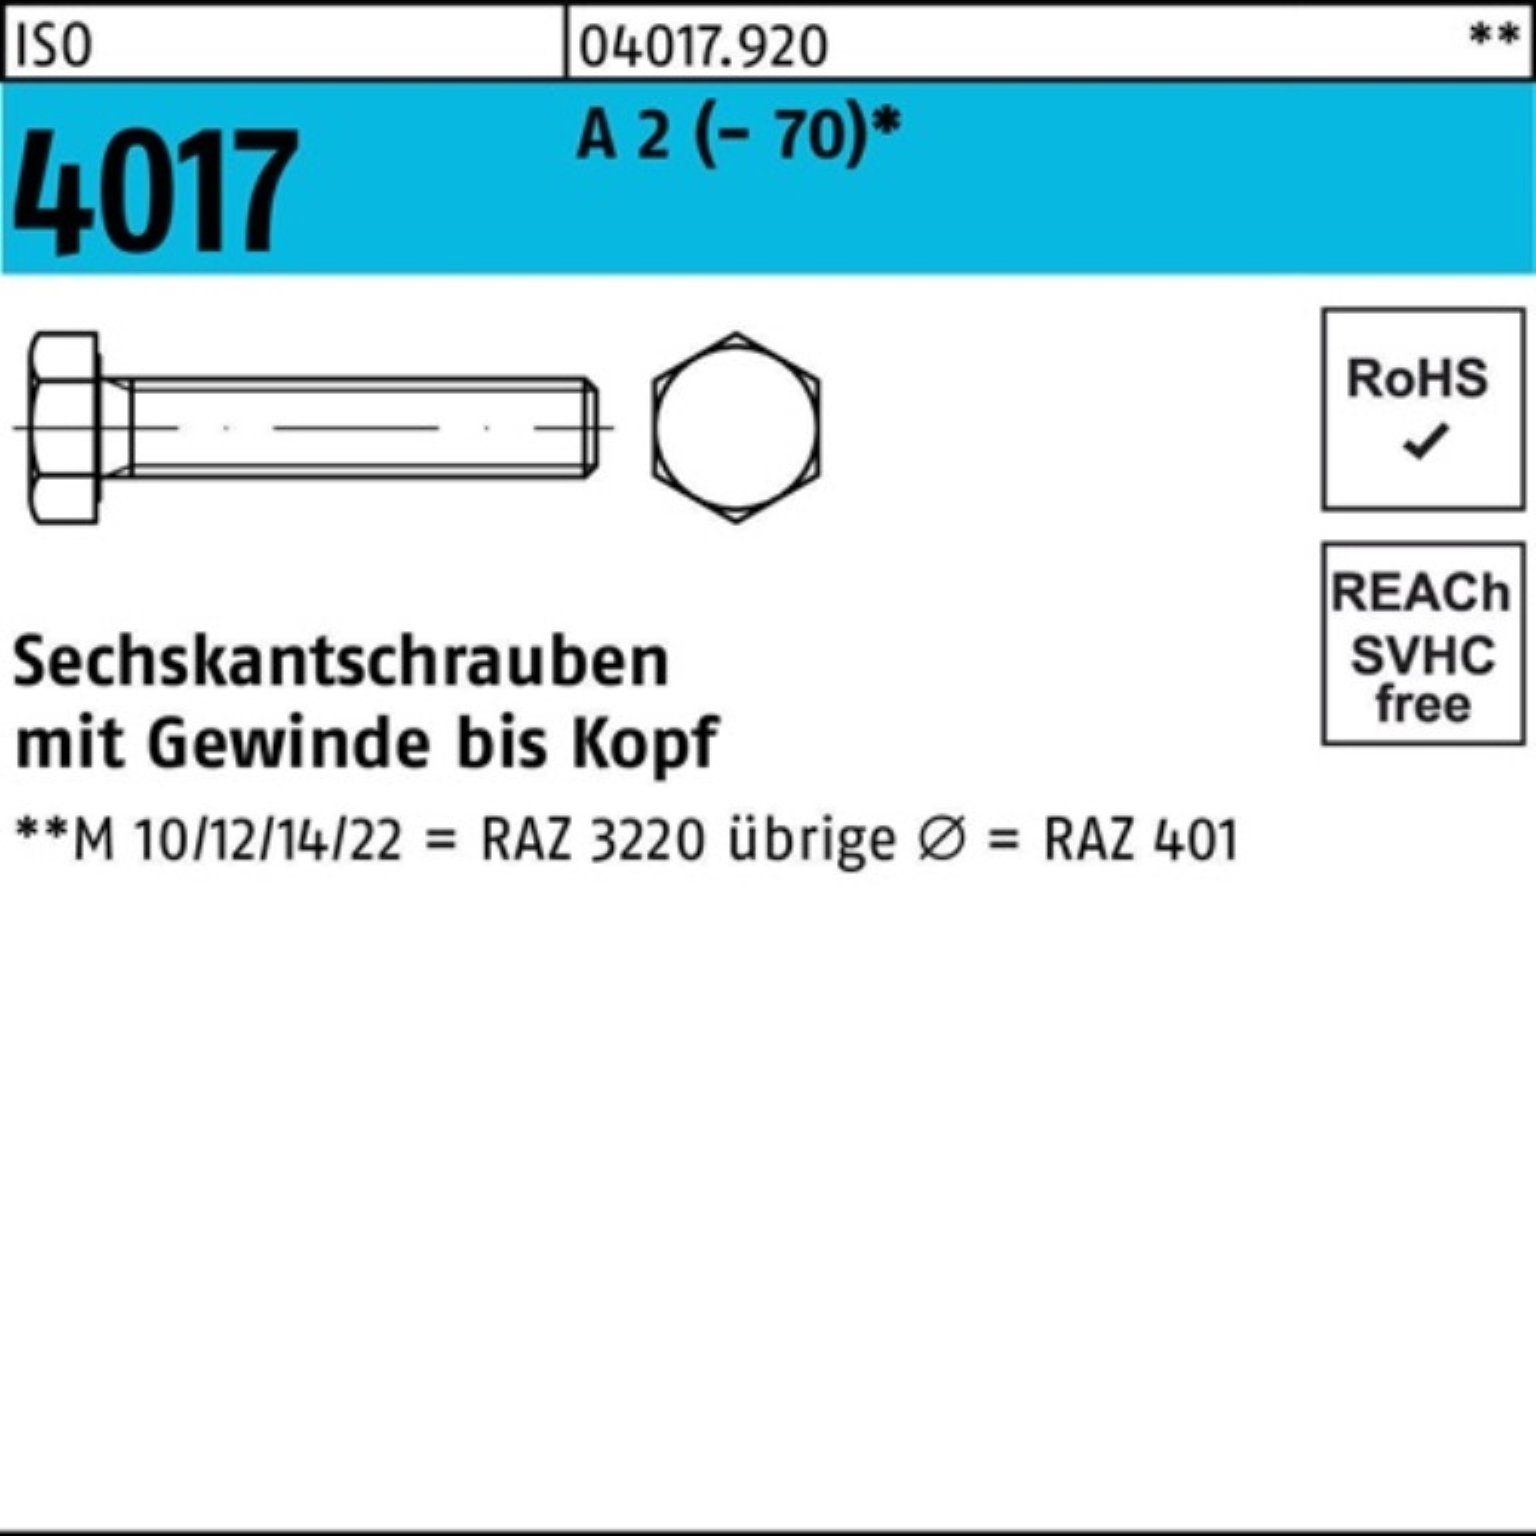 Bufab Sechskantschraube 100er Pack Sechskantschraube ISO 4017 VG M30x 90 A 2 (70) 1 Stück I